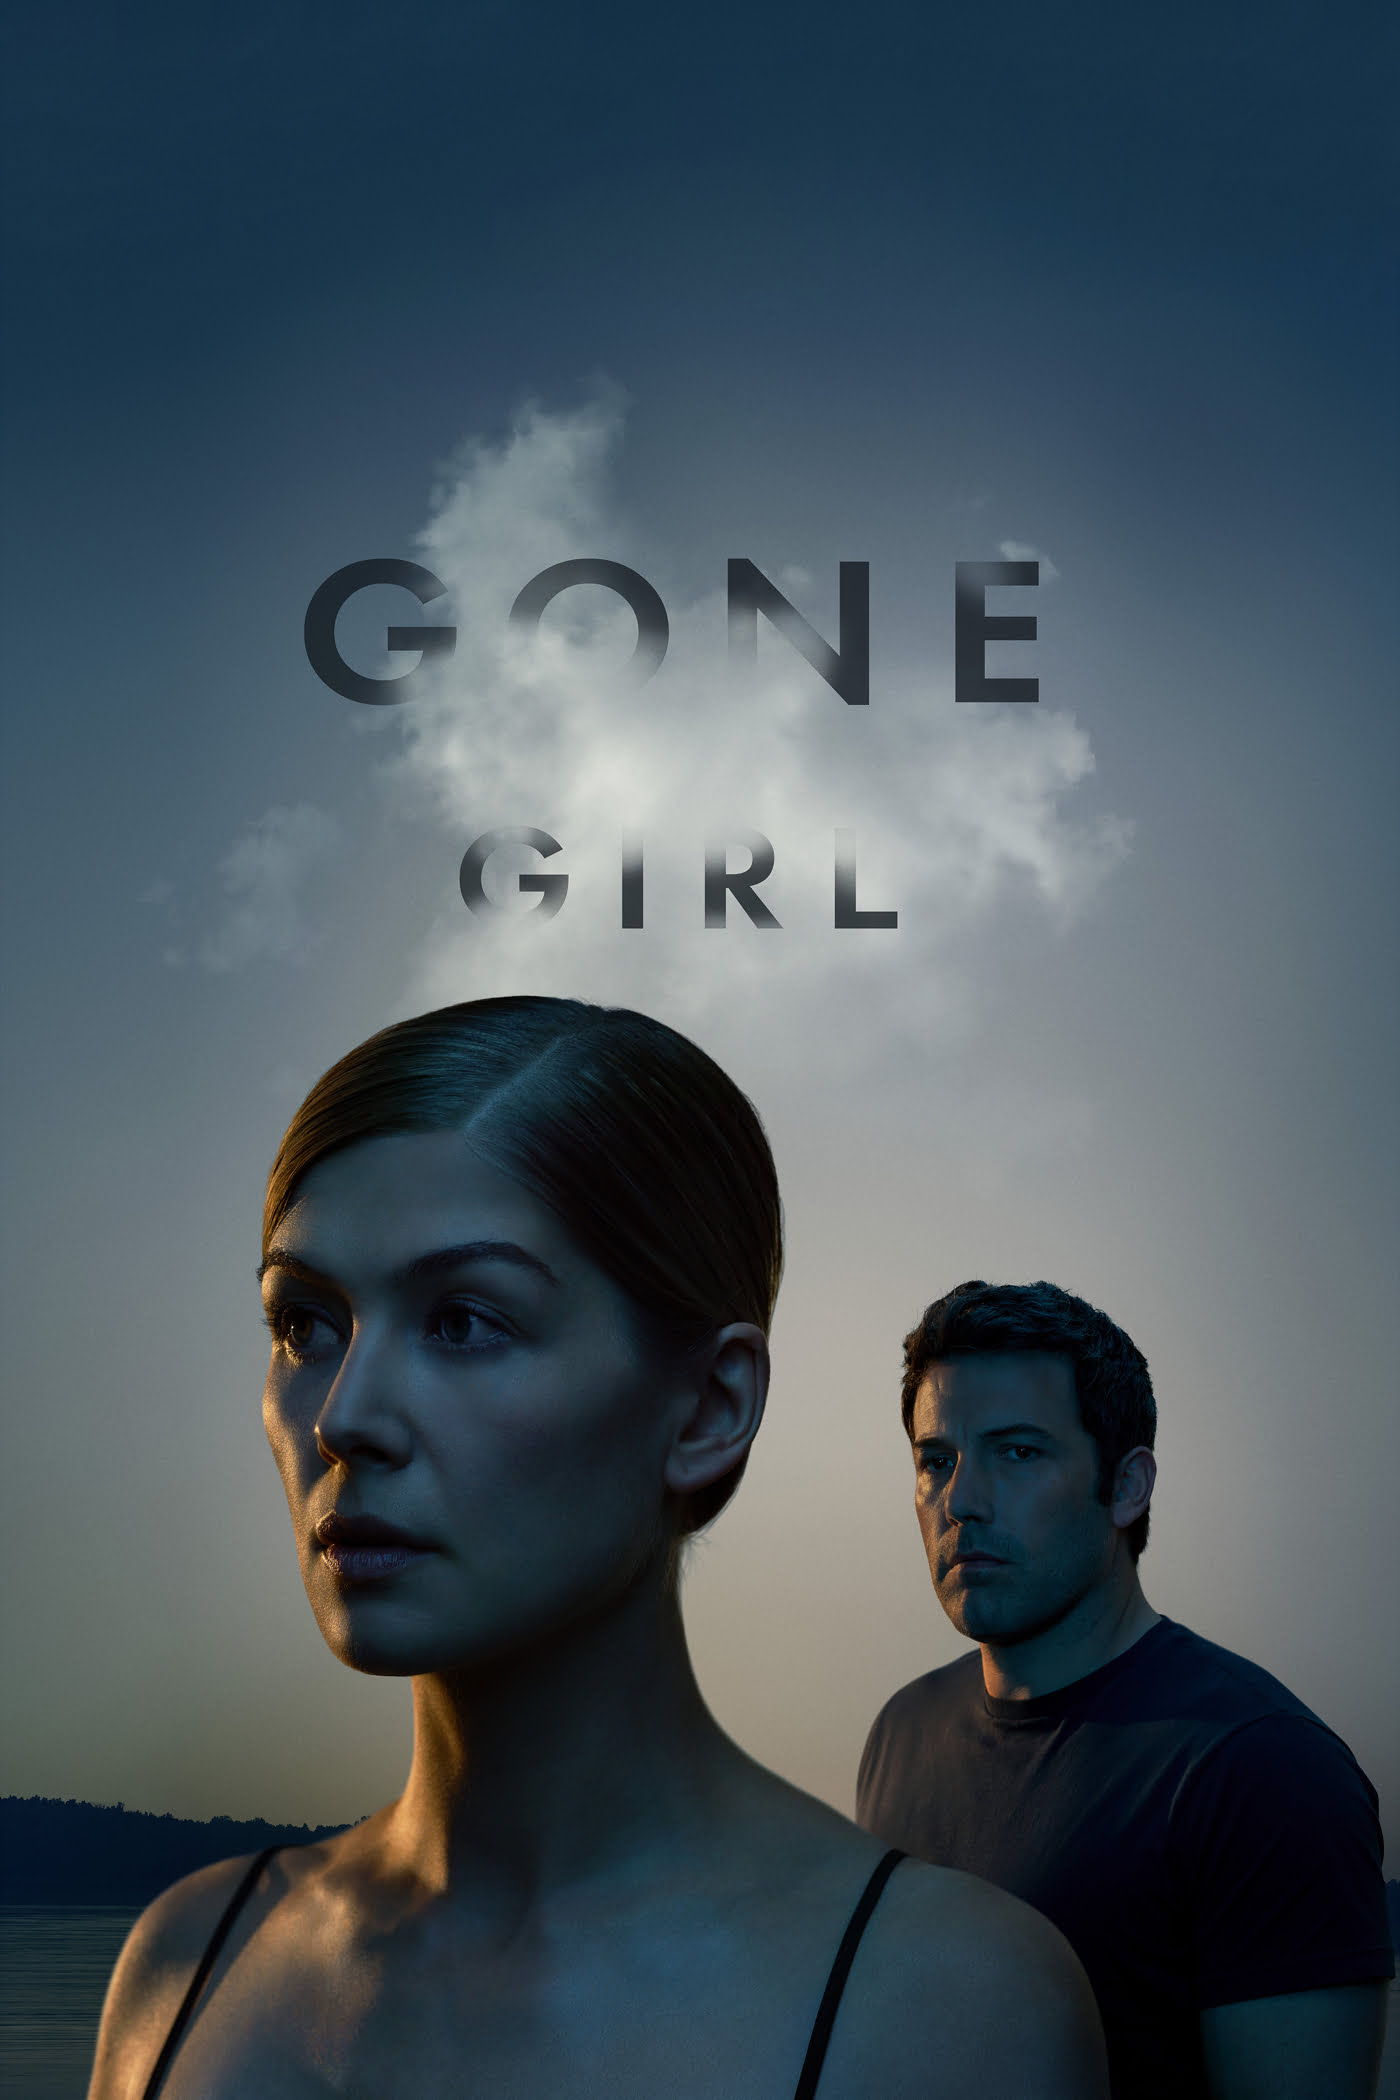 Poster for the filmen "Gone Girl"